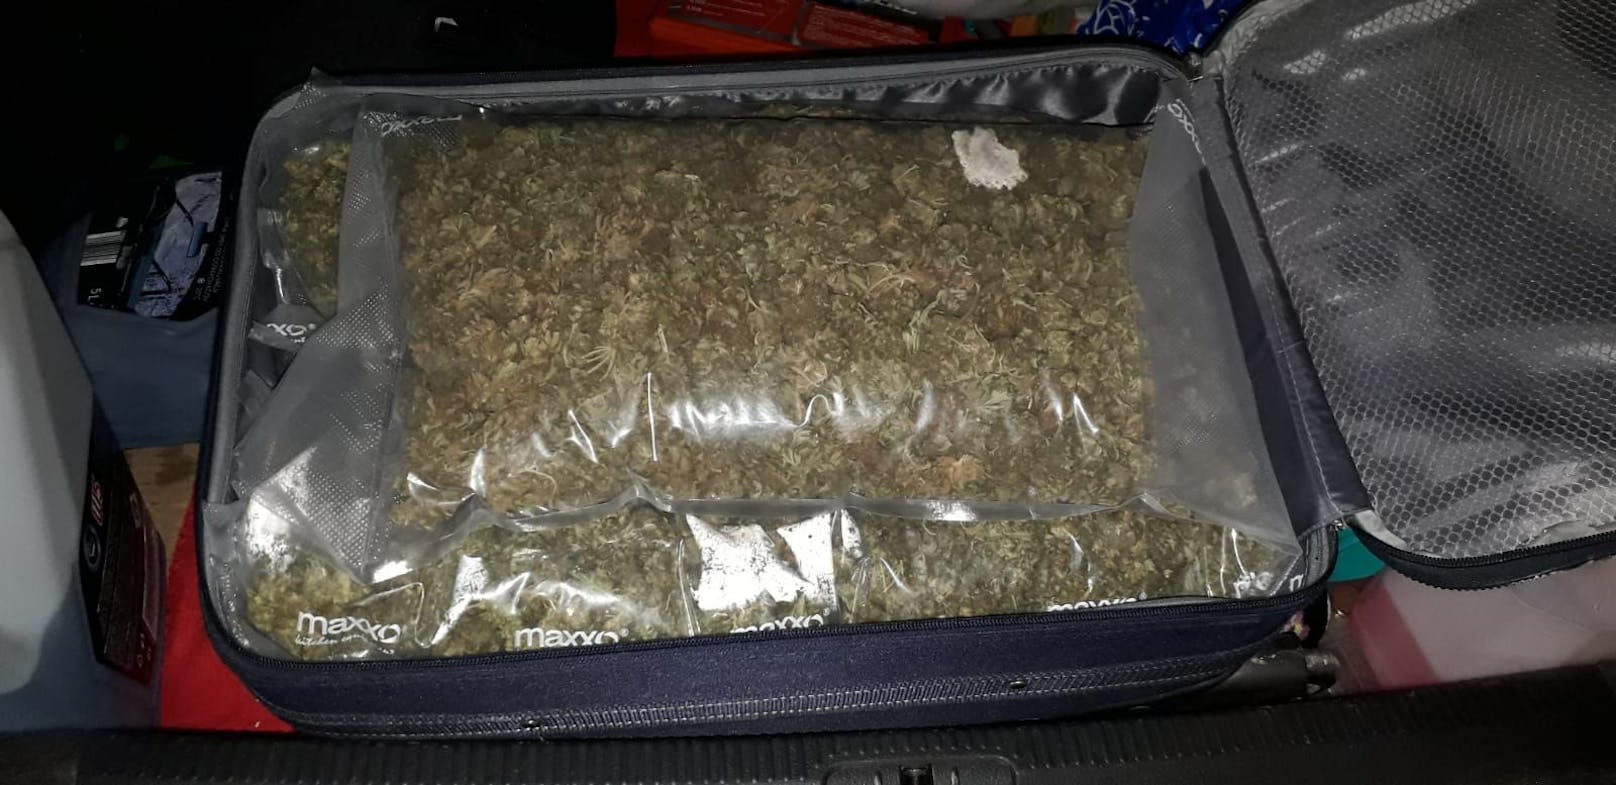 Die Polizei Salzburg hat in einem Reisekoffer insgesamt rund 8 Kilogramm Cannabiskraut sichergestellt.